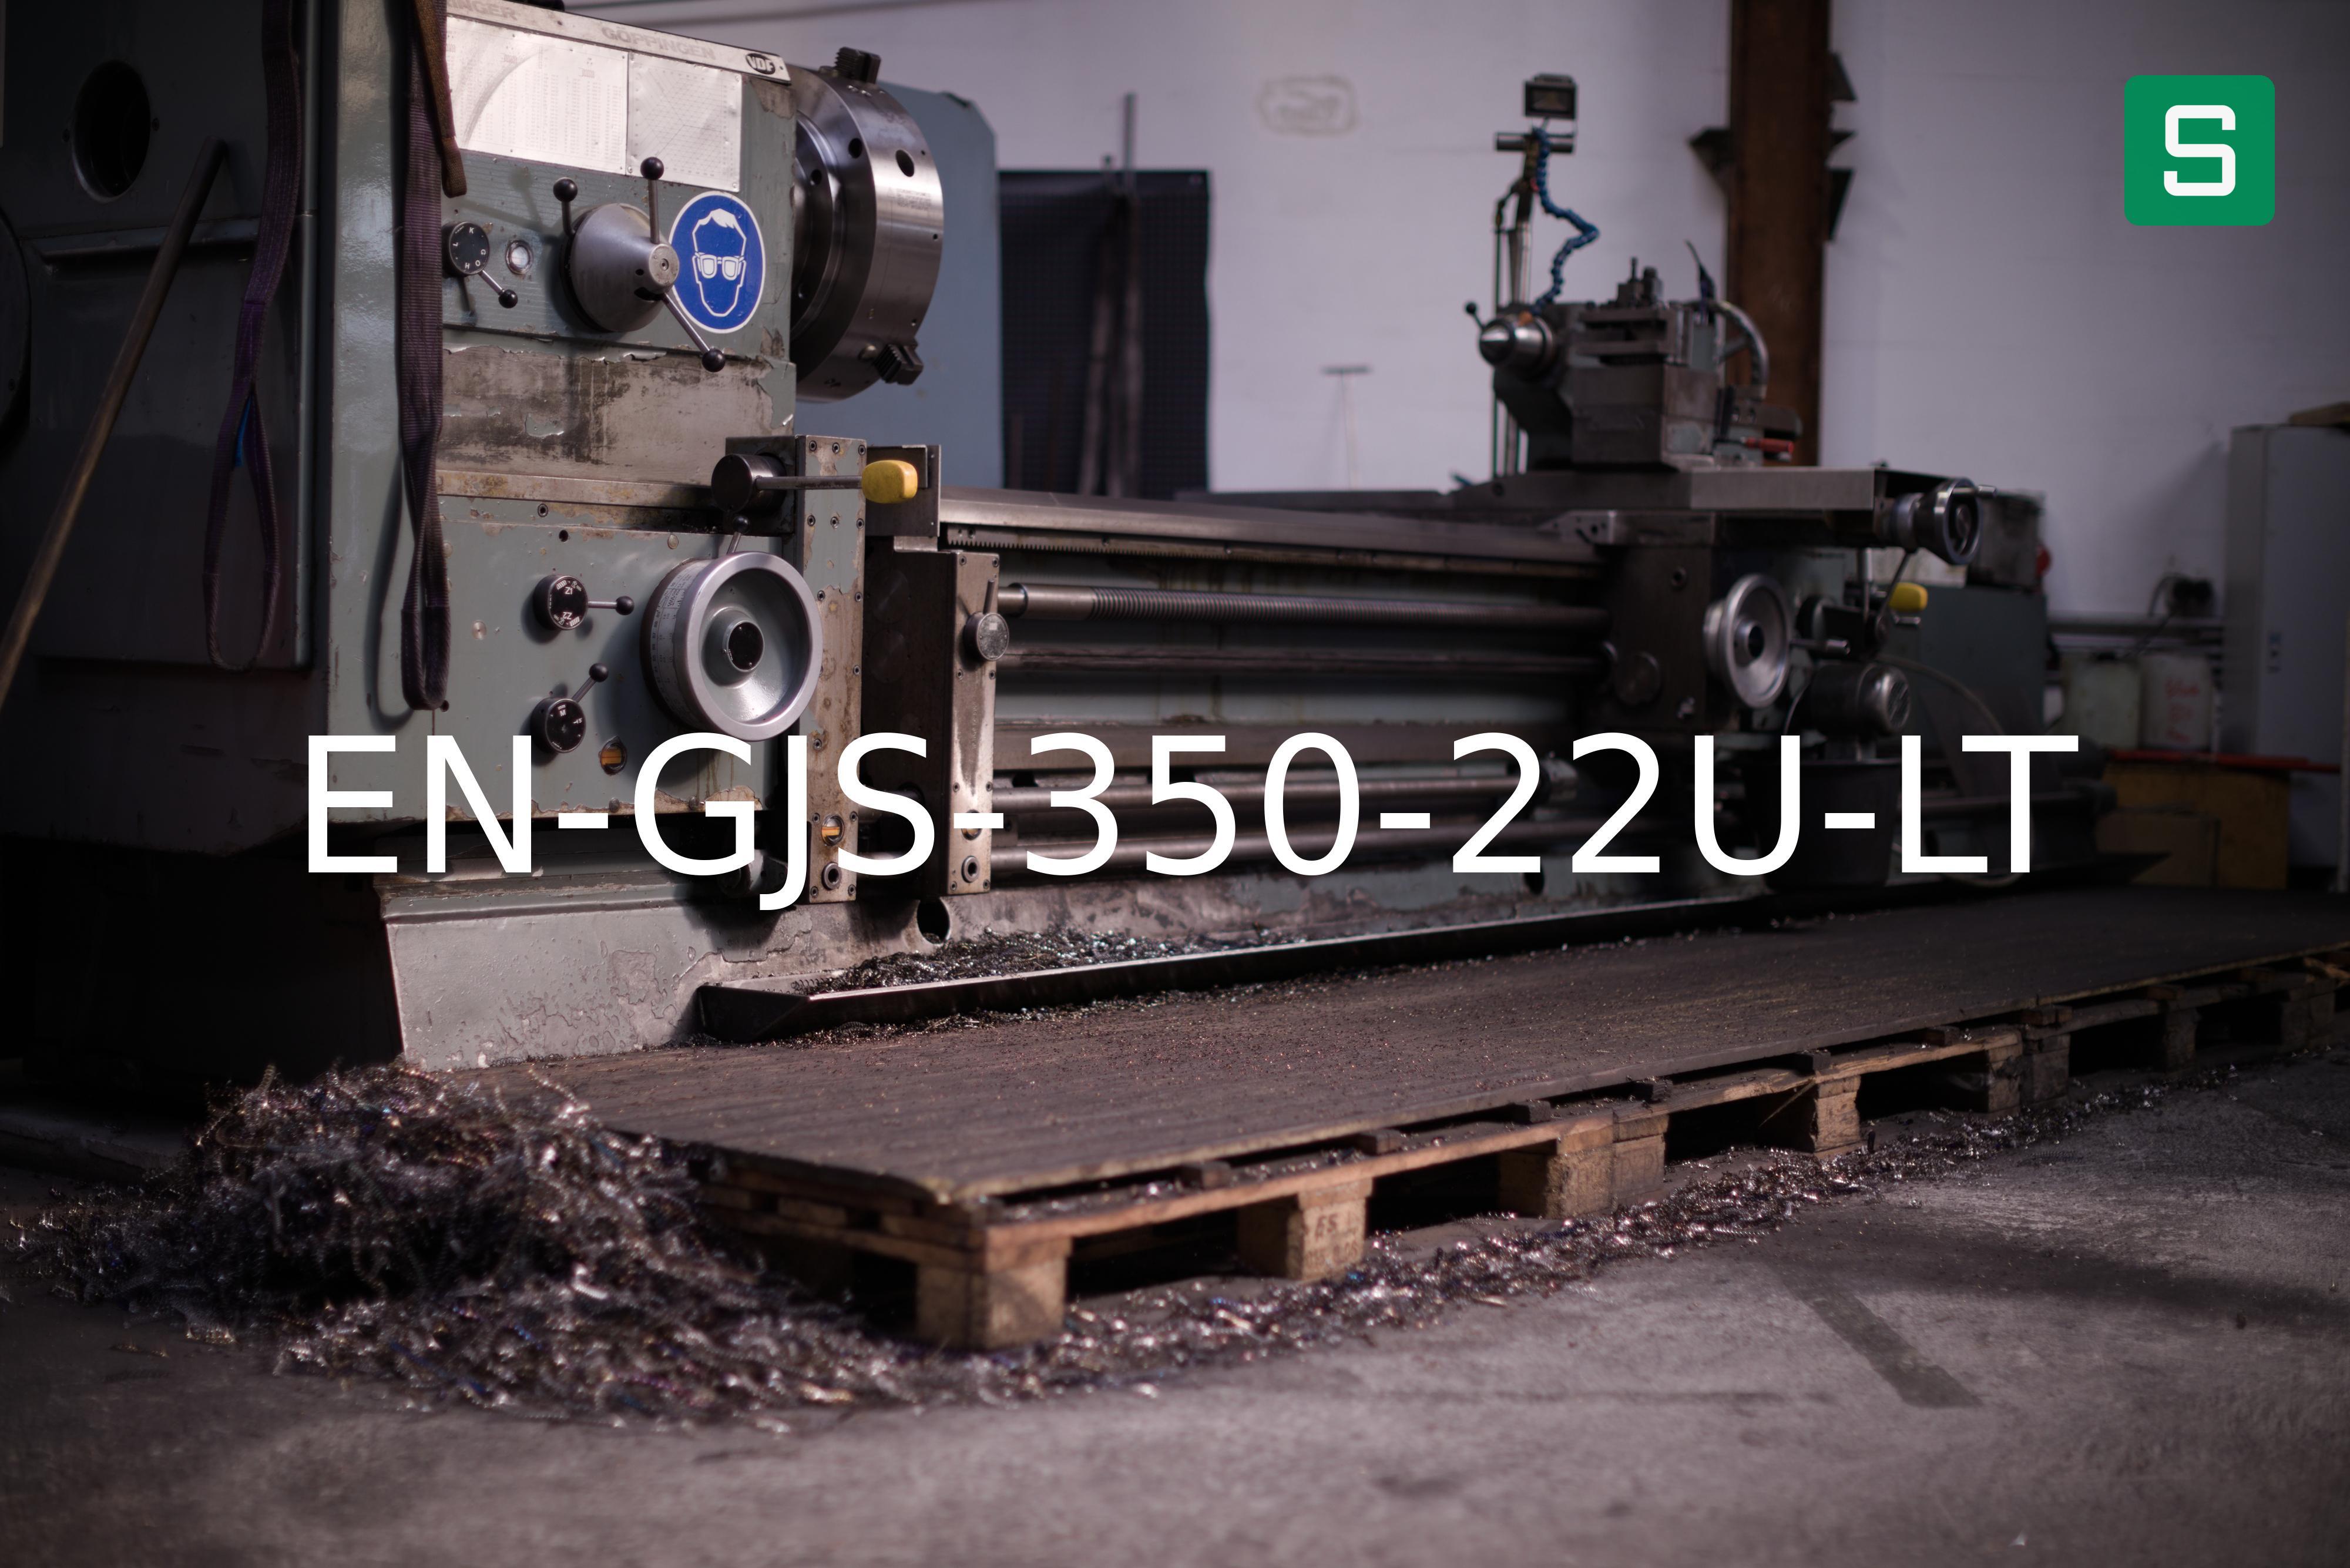 Steel Material: EN-GJS-350-22U-LT